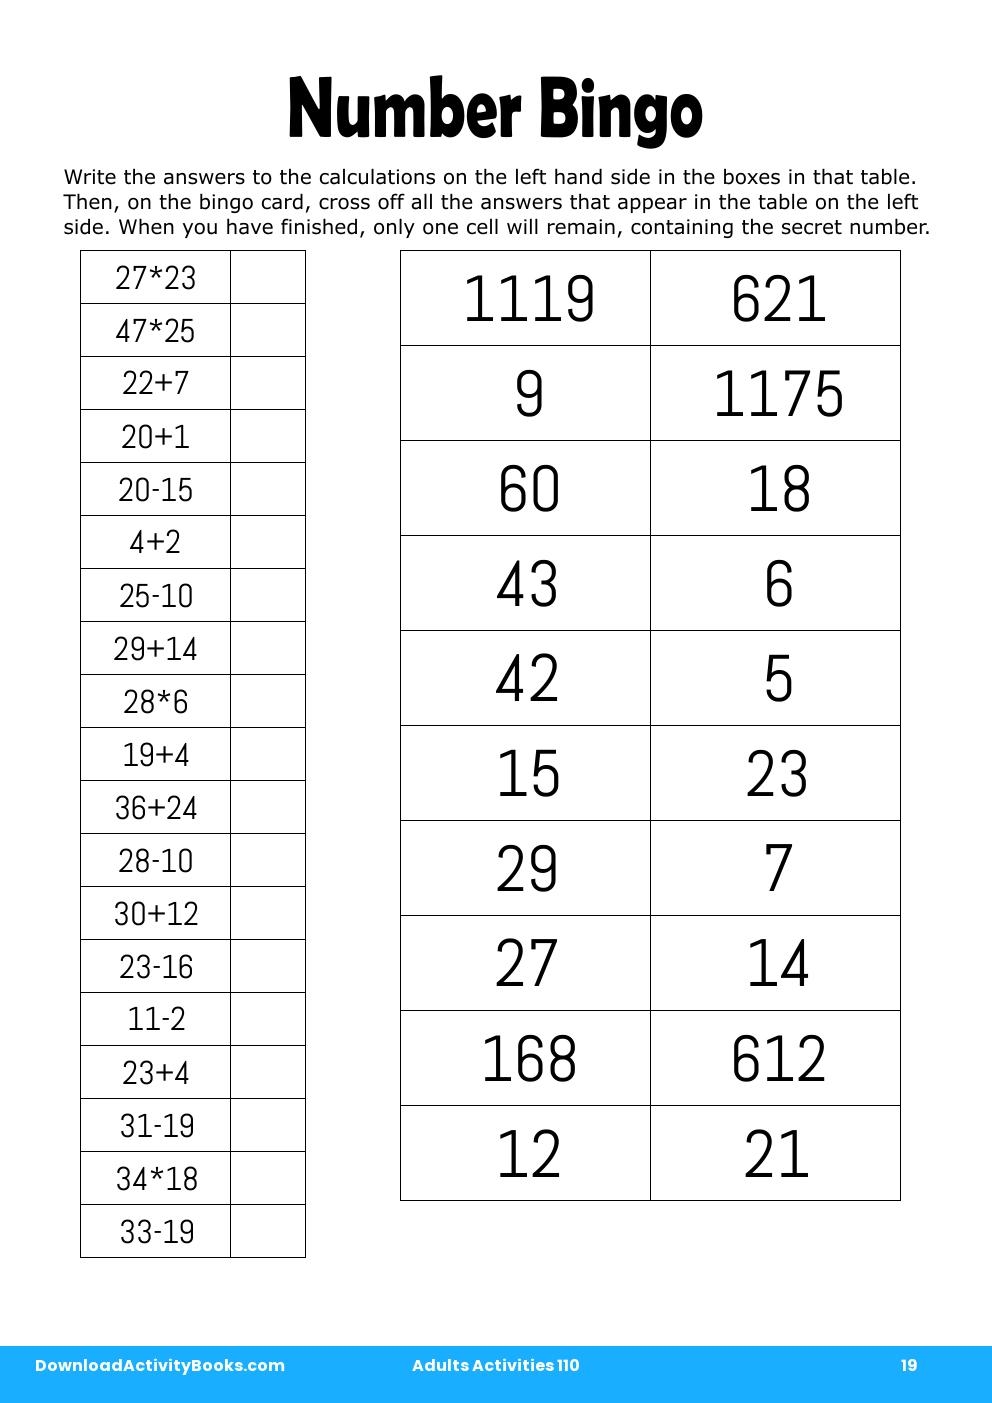 Number Bingo in Adults Activities 110